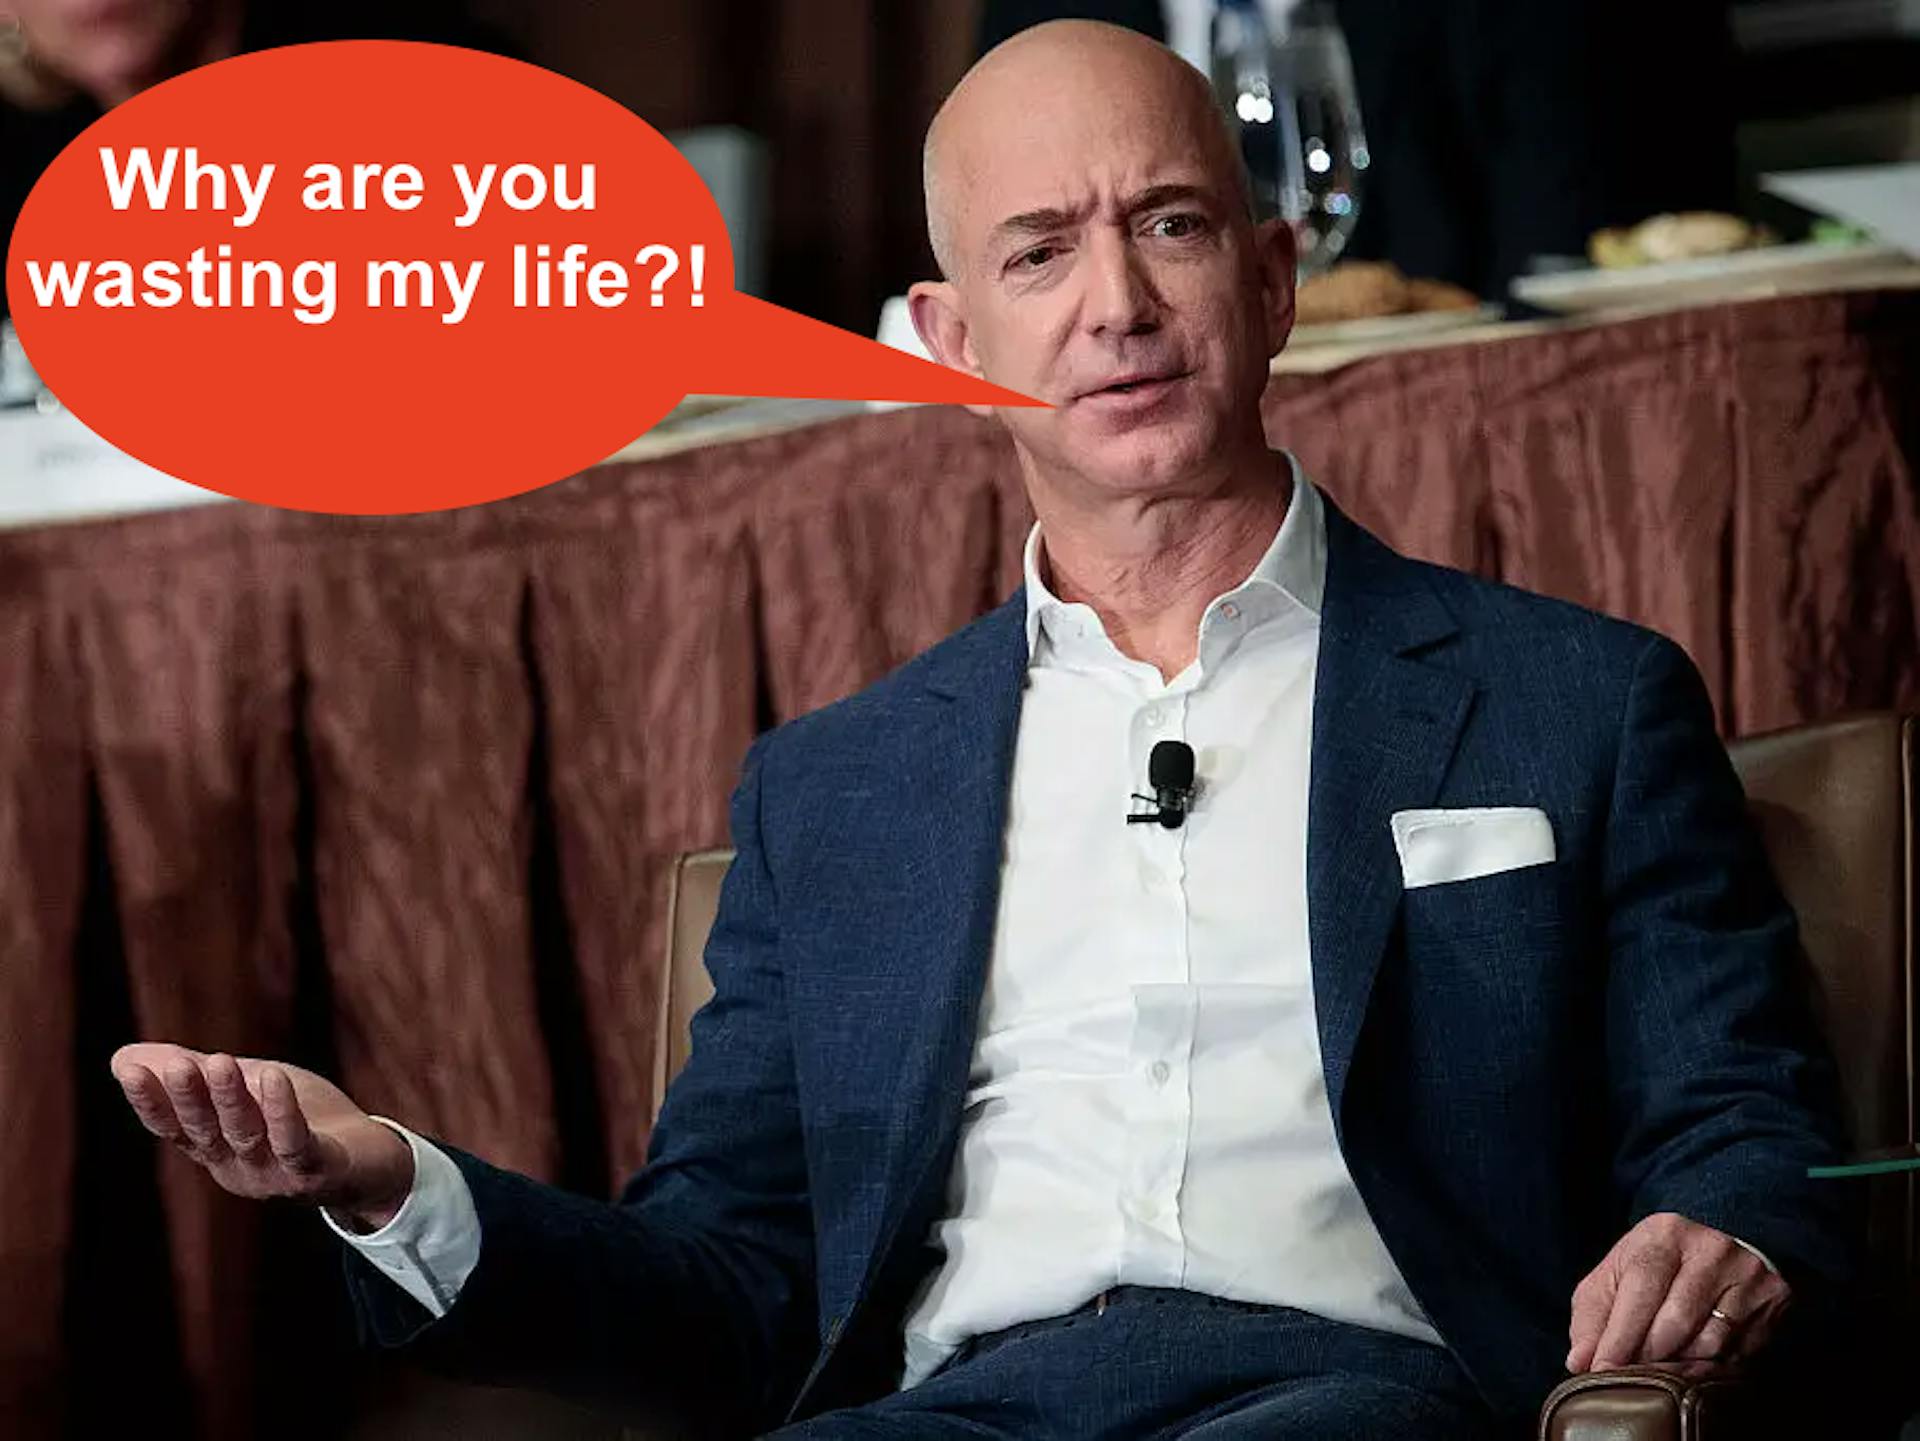 (Theo cáo buộc, Jeff Bezos sẽ nói điều đó trong một lần bộc phát của mình. Nguồn: “Amazon Unbound, Jeff Bezos và sự phát minh ra đế chế toàn cầu”, Brad Stone, 2021, trang 15)